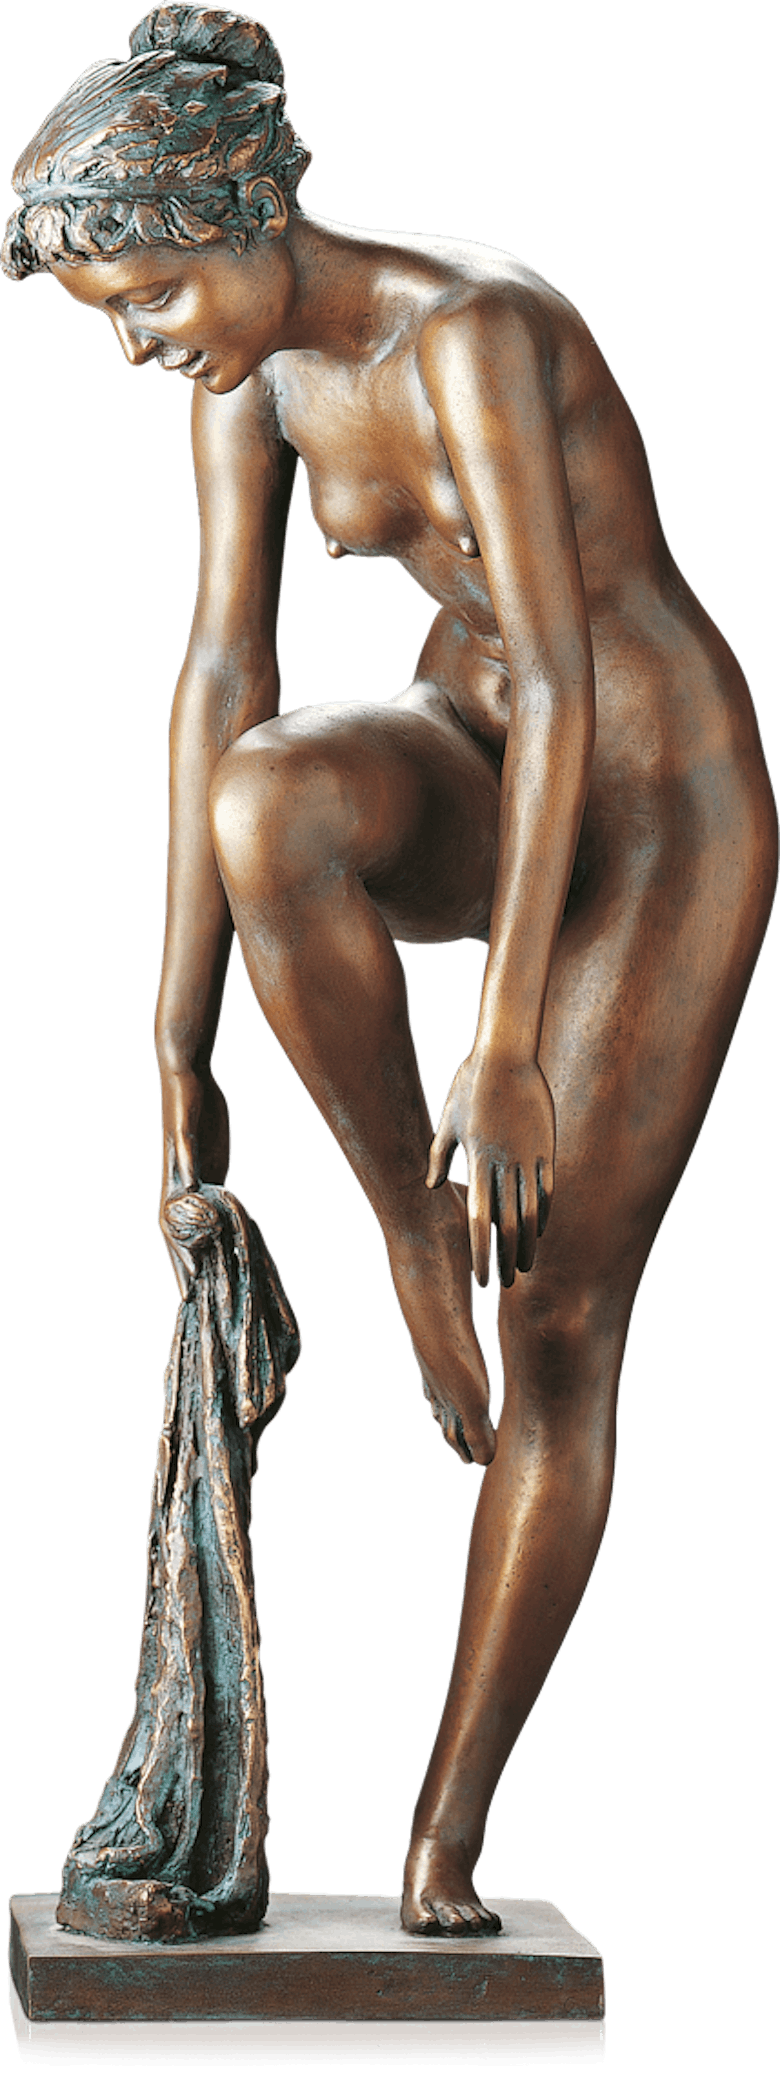 Bronzefigur Nach dem Bade von Erwin A. Schinzel